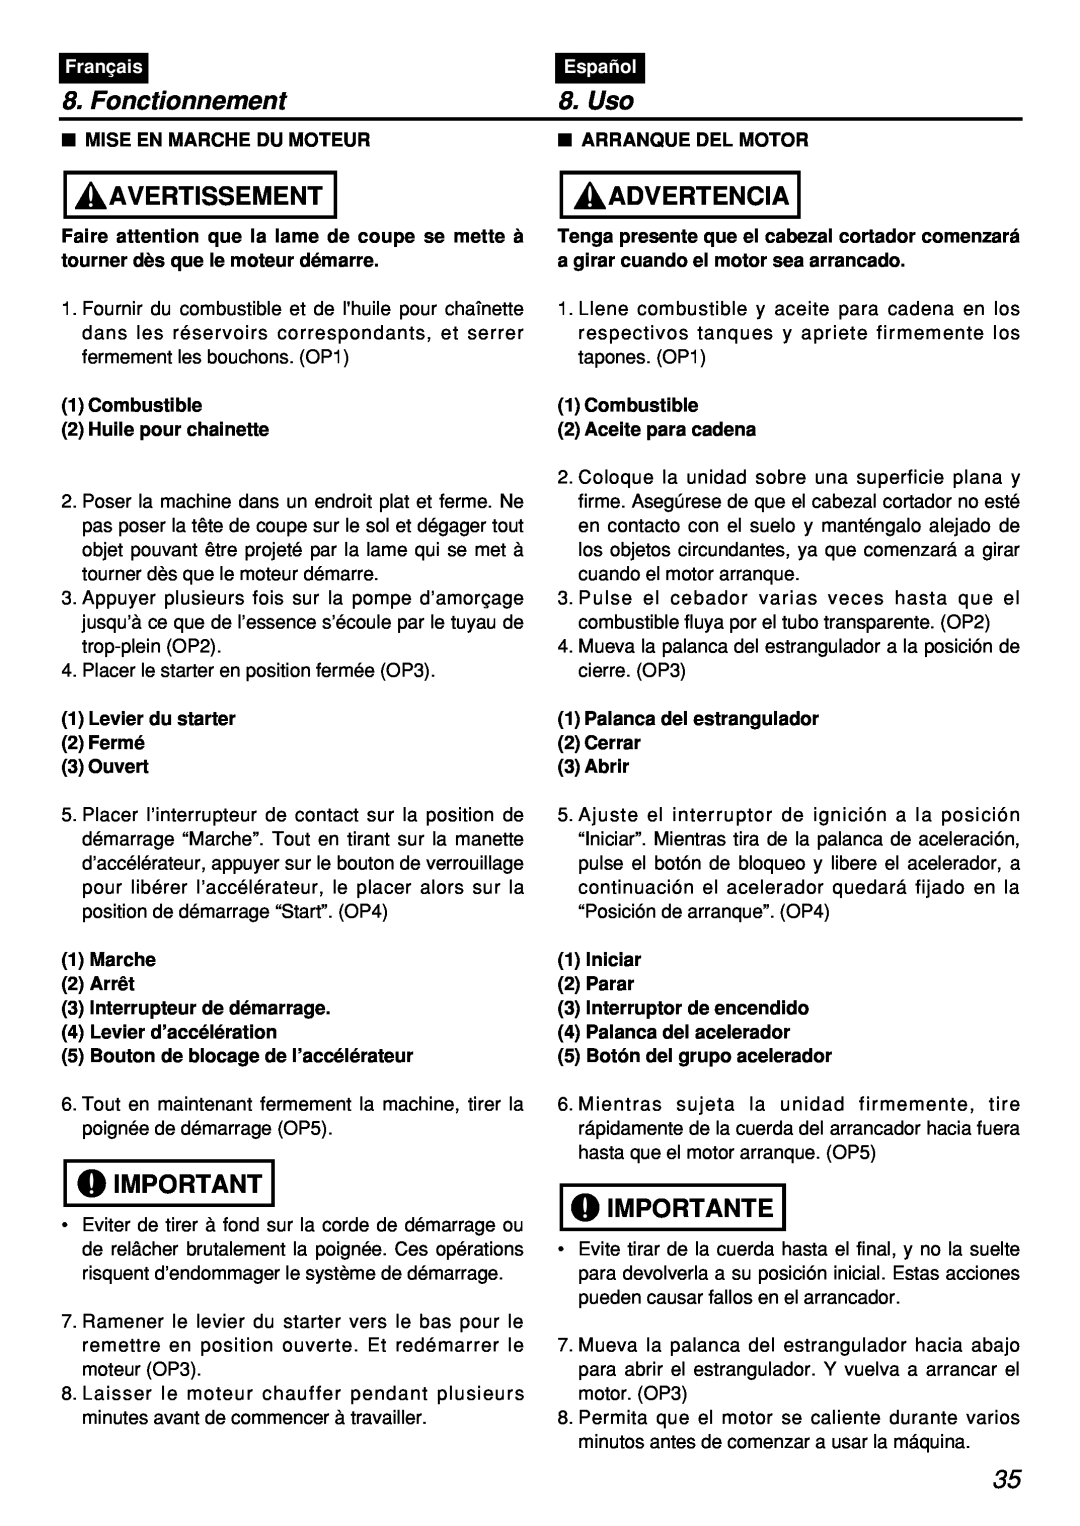 Zenoah PSZ2401, PSZ2401-CA manual Fonctionnement, Uso, Avertissement, Advertencia, Importante, Français, Español 